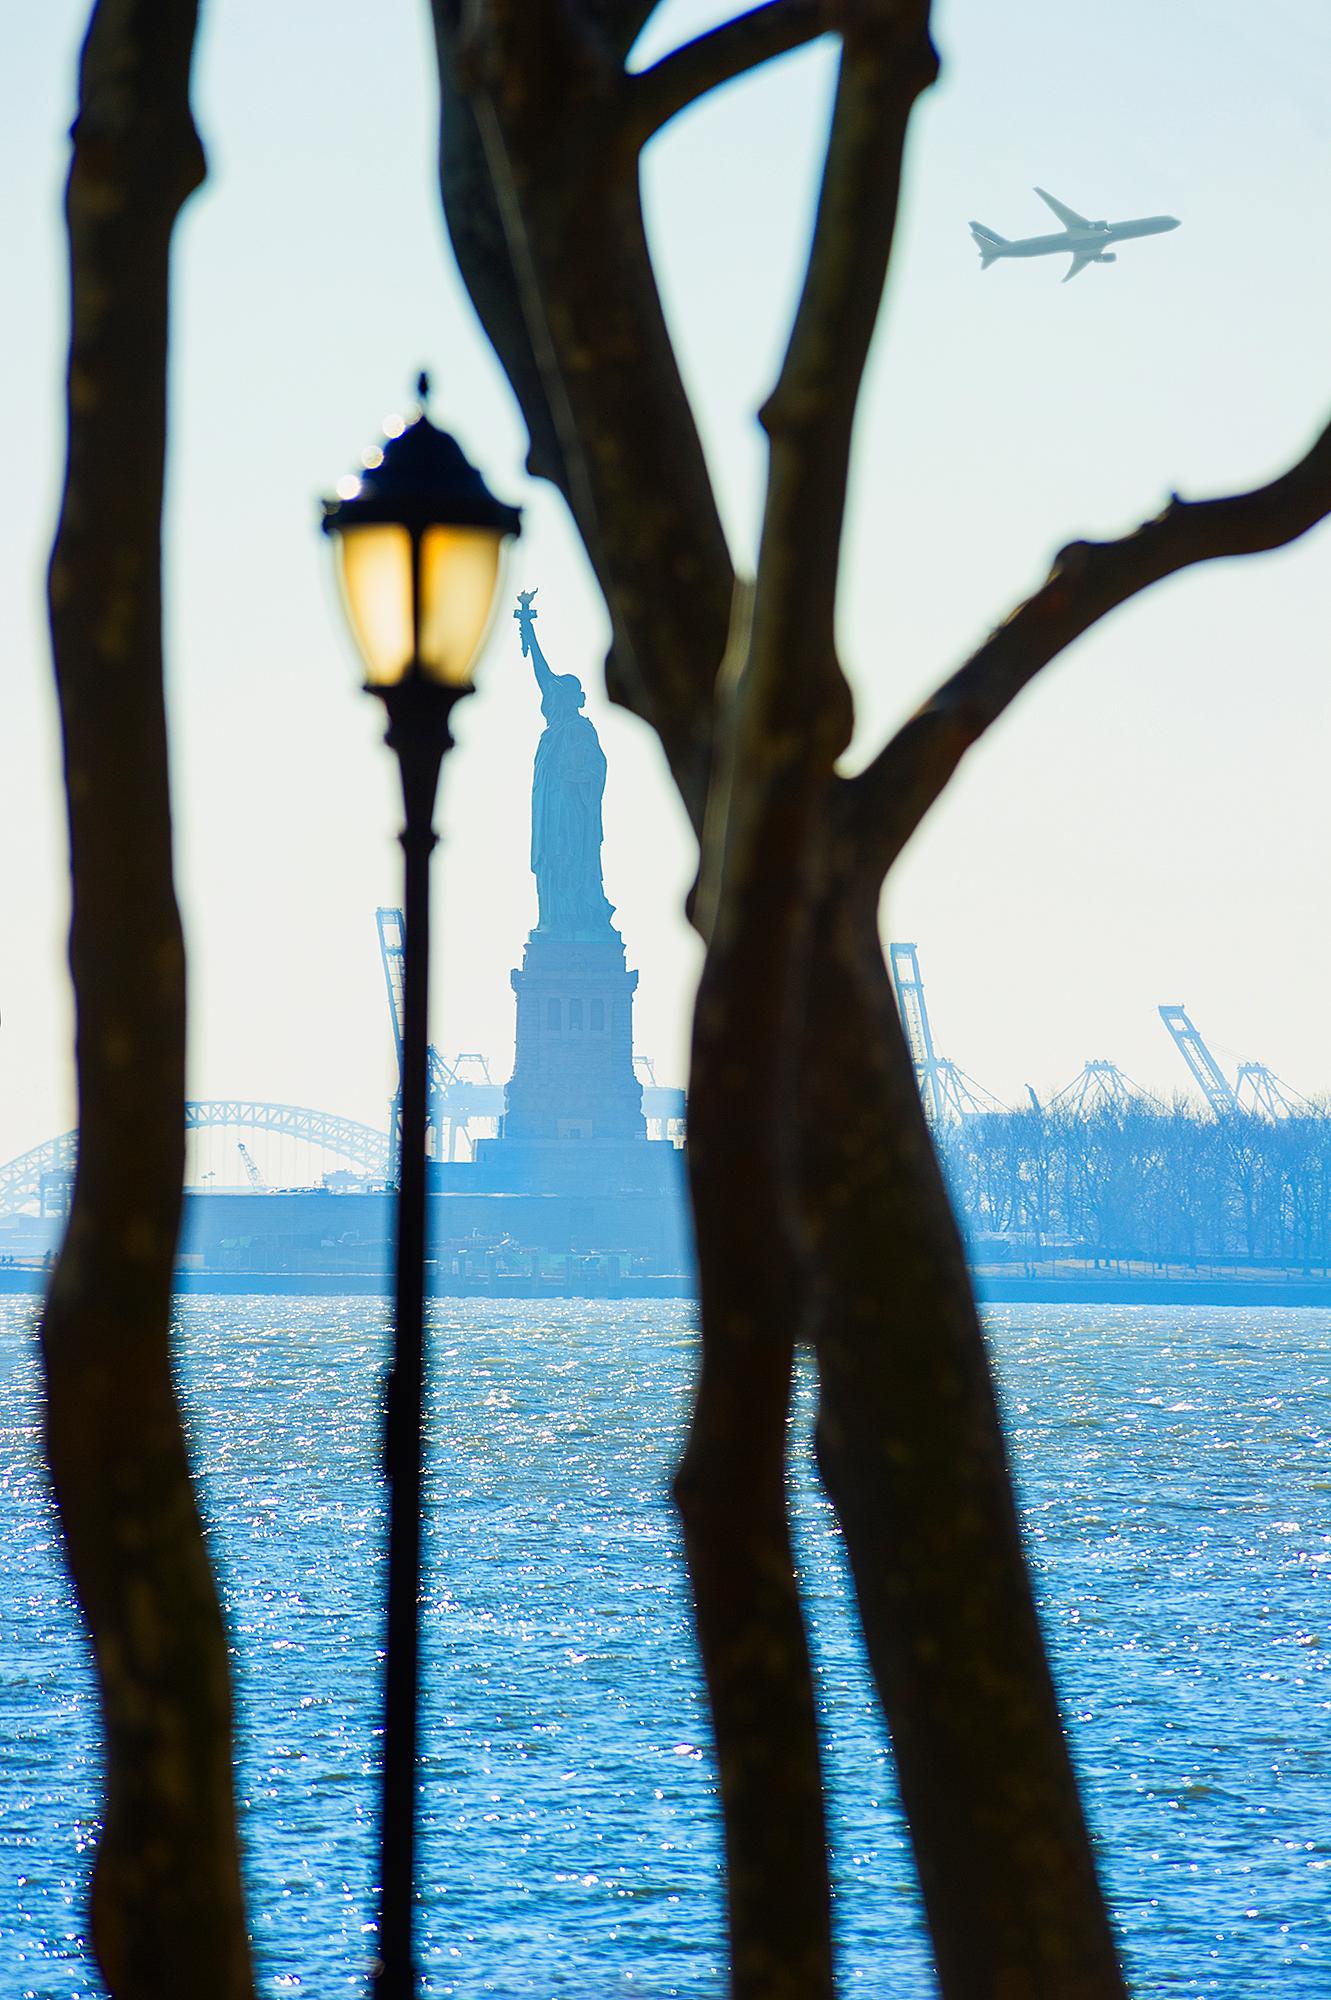 Liberty- Freiheitsstatue  Gerahmt von Bäumen und Straßenlampe im Battery Park,  New York 